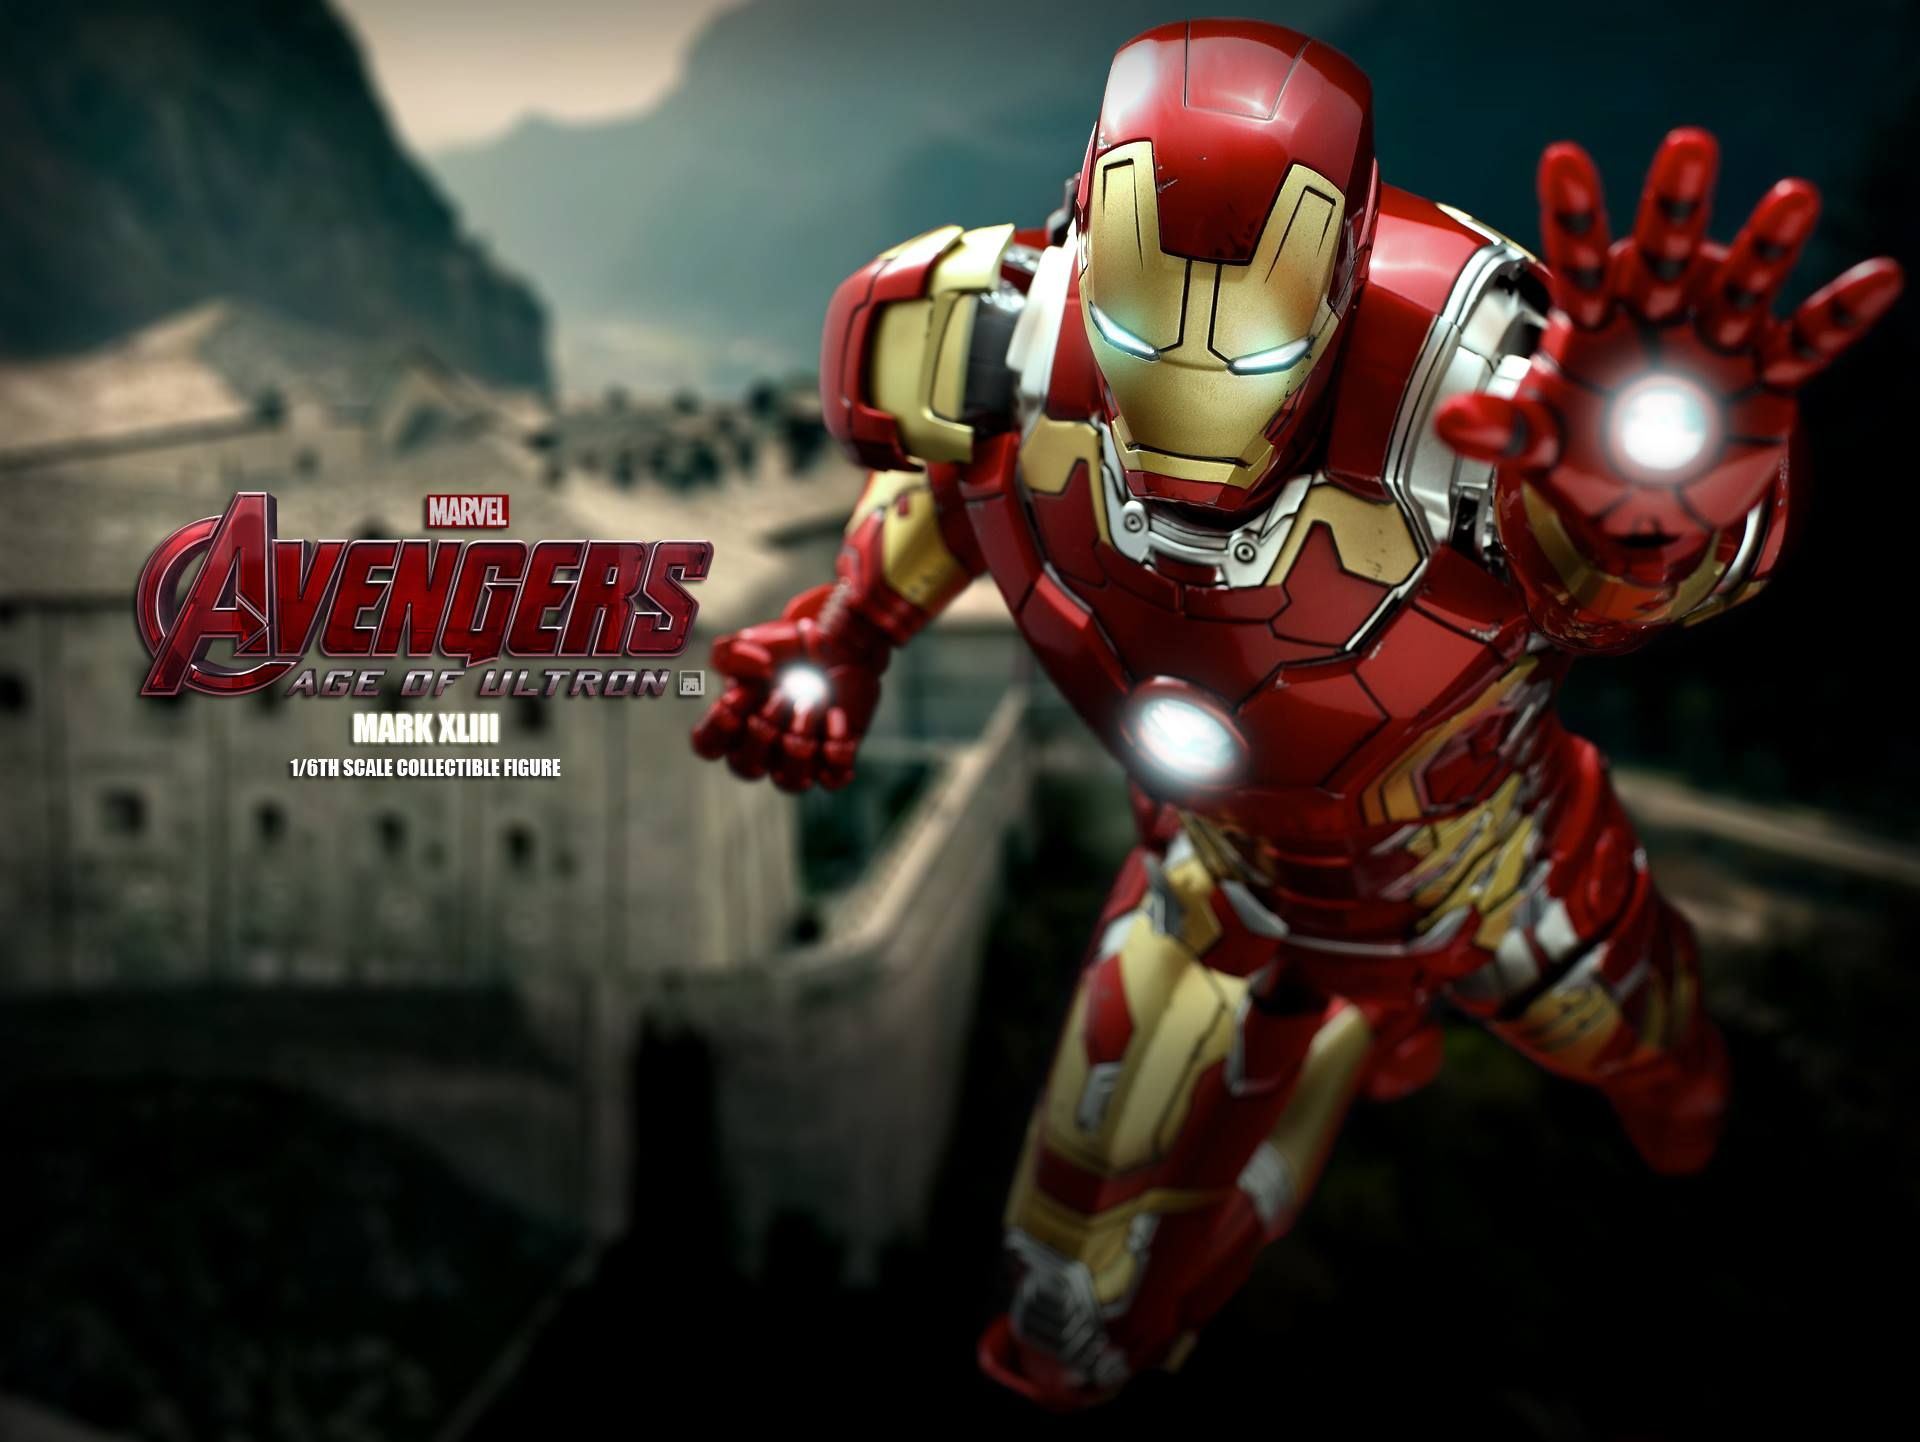 Avengers 2 Iron Man Mark XLIII Action Figure Photo 16